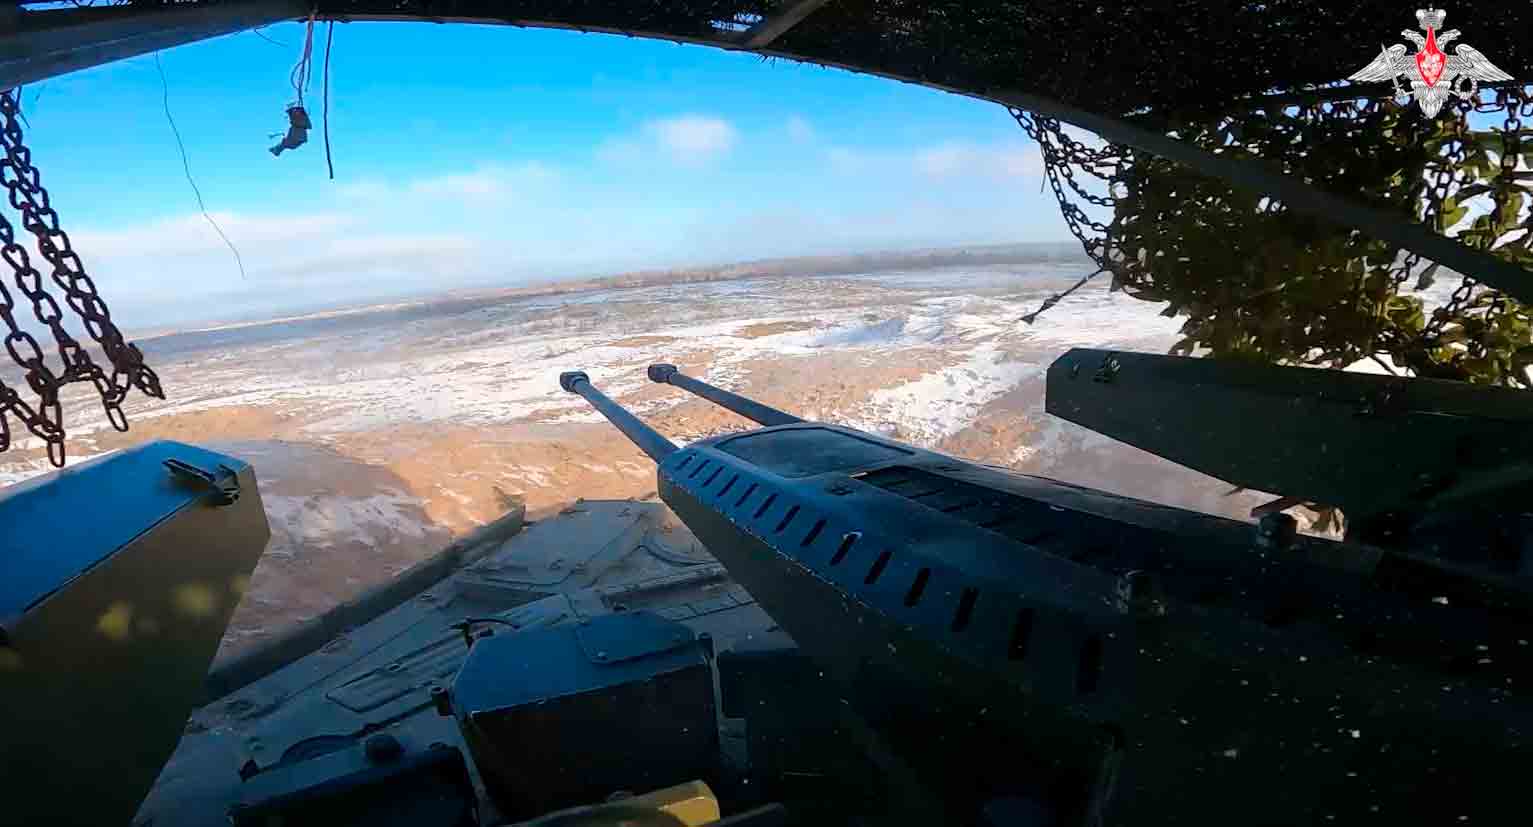 Nové tanky 'Terminátor' přímo dorazily do bojové zóny na Ukrajině